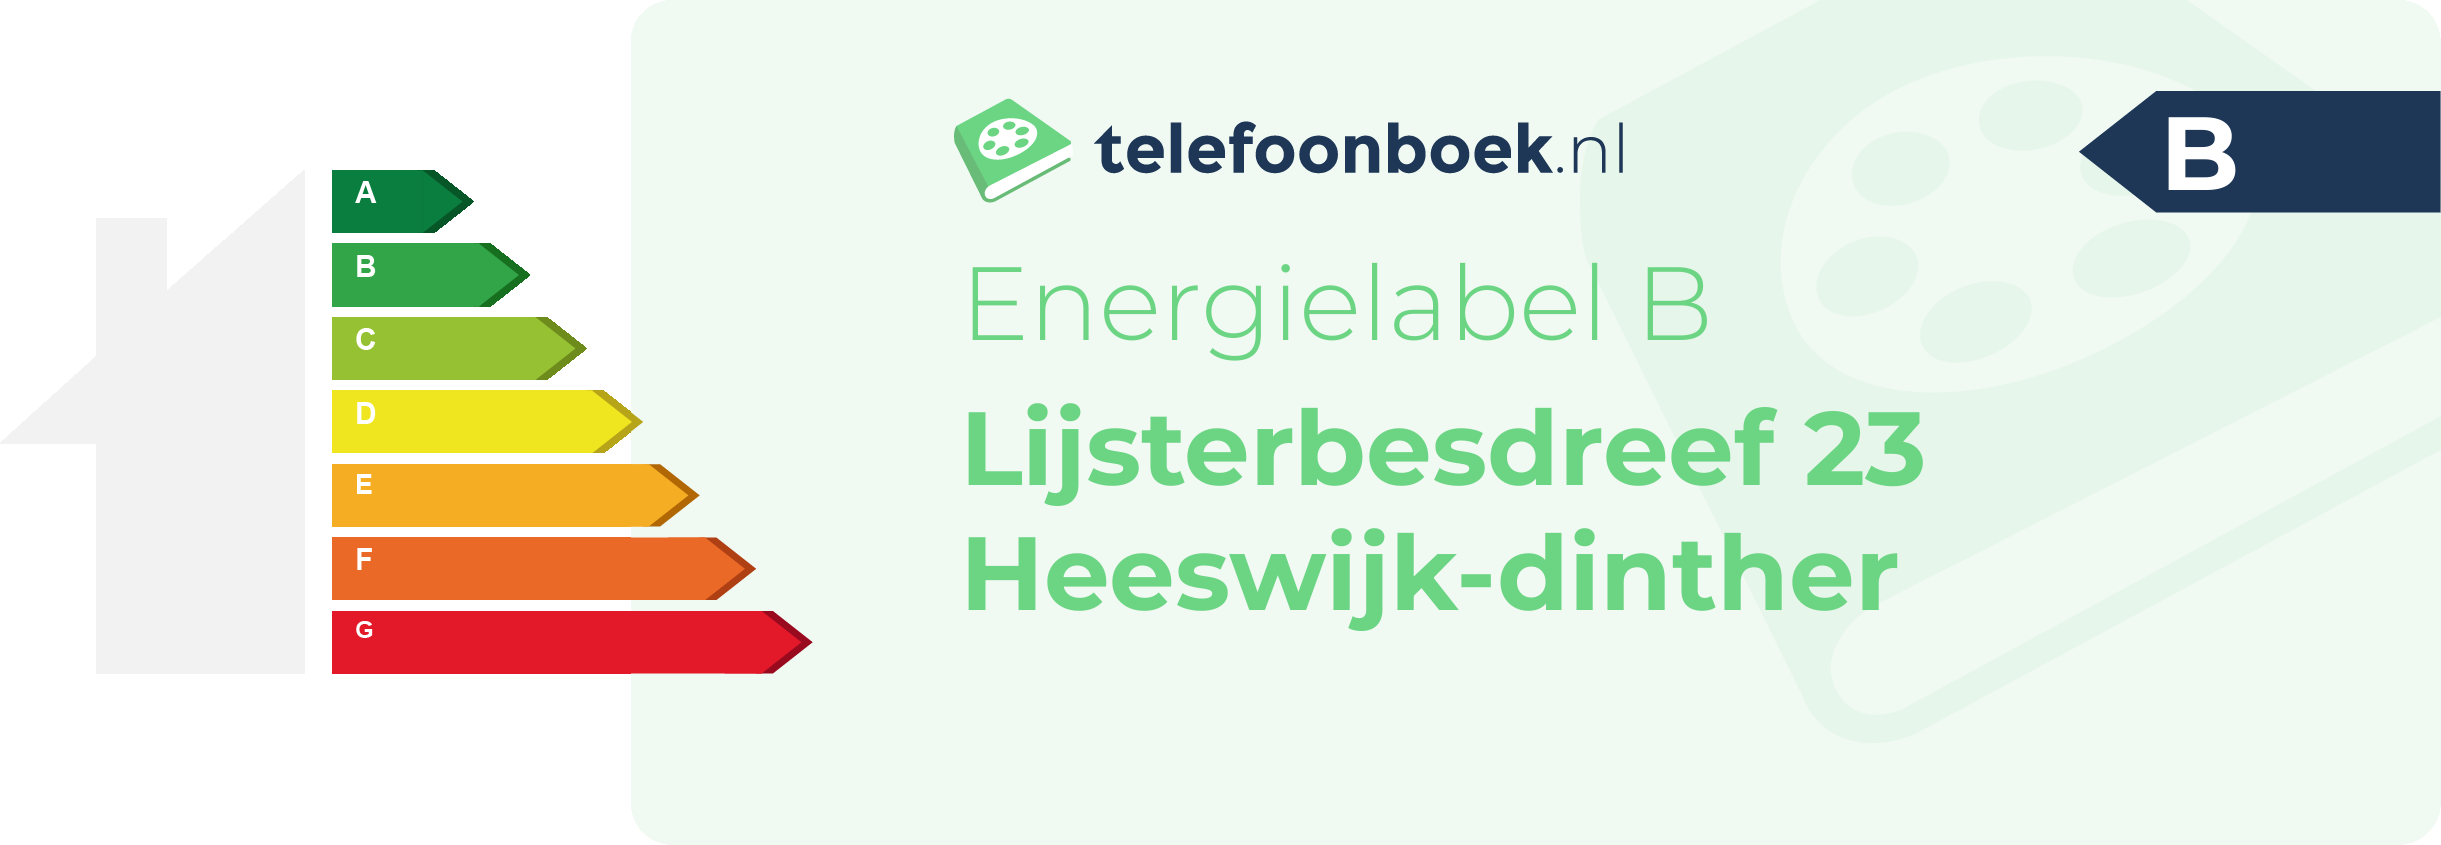 Energielabel Lijsterbesdreef 23 Heeswijk-Dinther